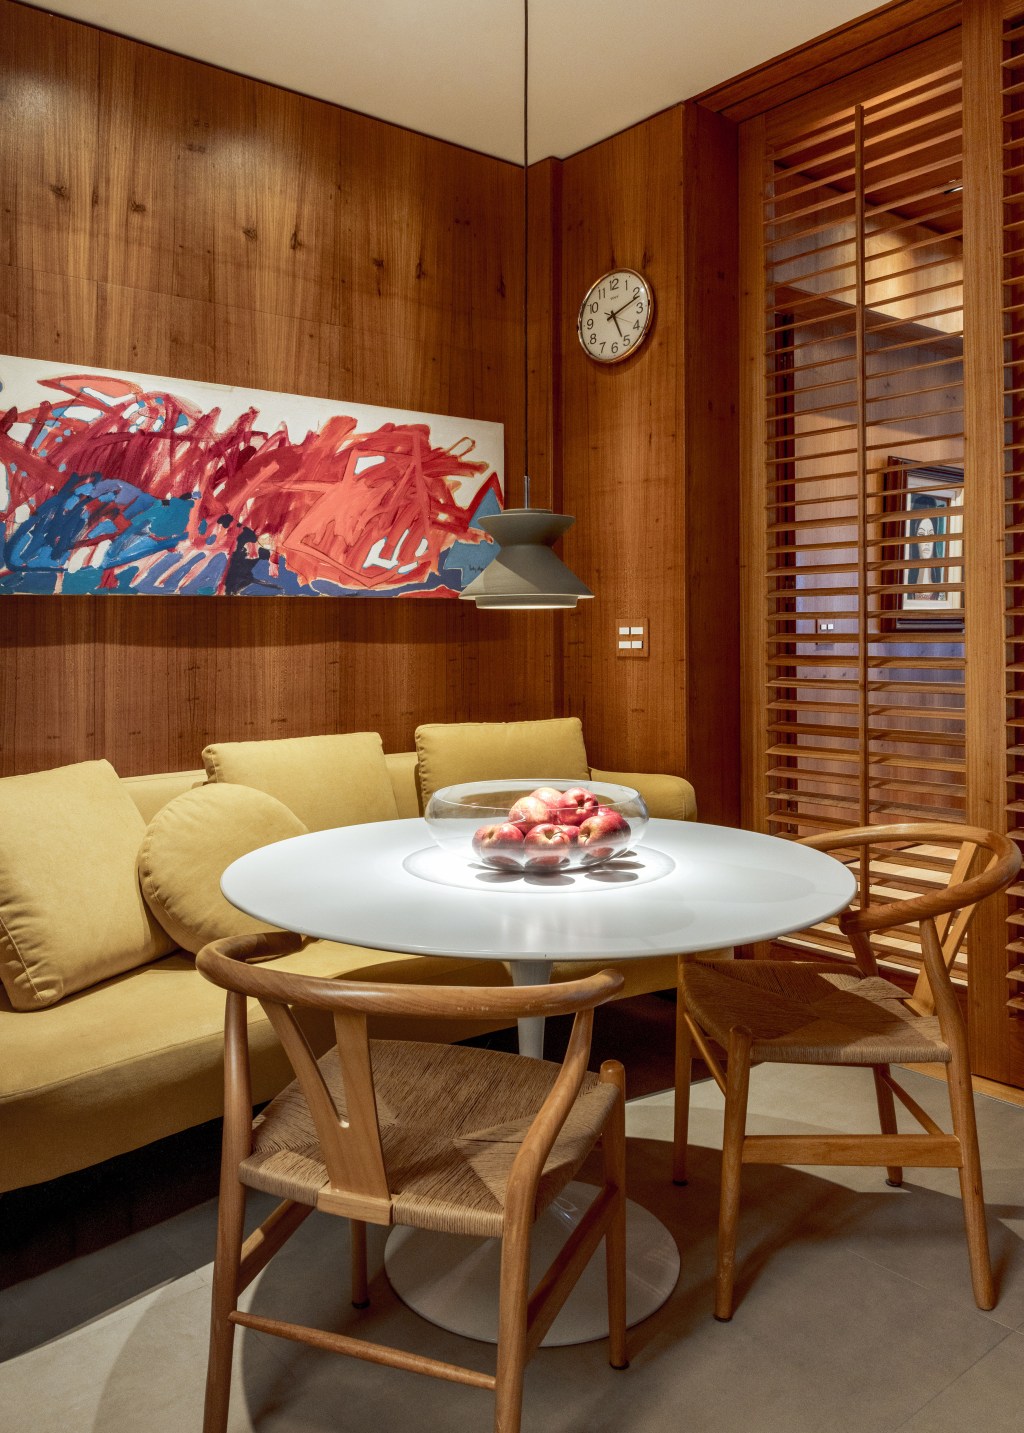 Apê 400 m² cara de casa design brasileiro arte Escala Arquitetura Rio de Janeiro decoracao sala almoco canto alemao sofa mesa cadeiras madeira